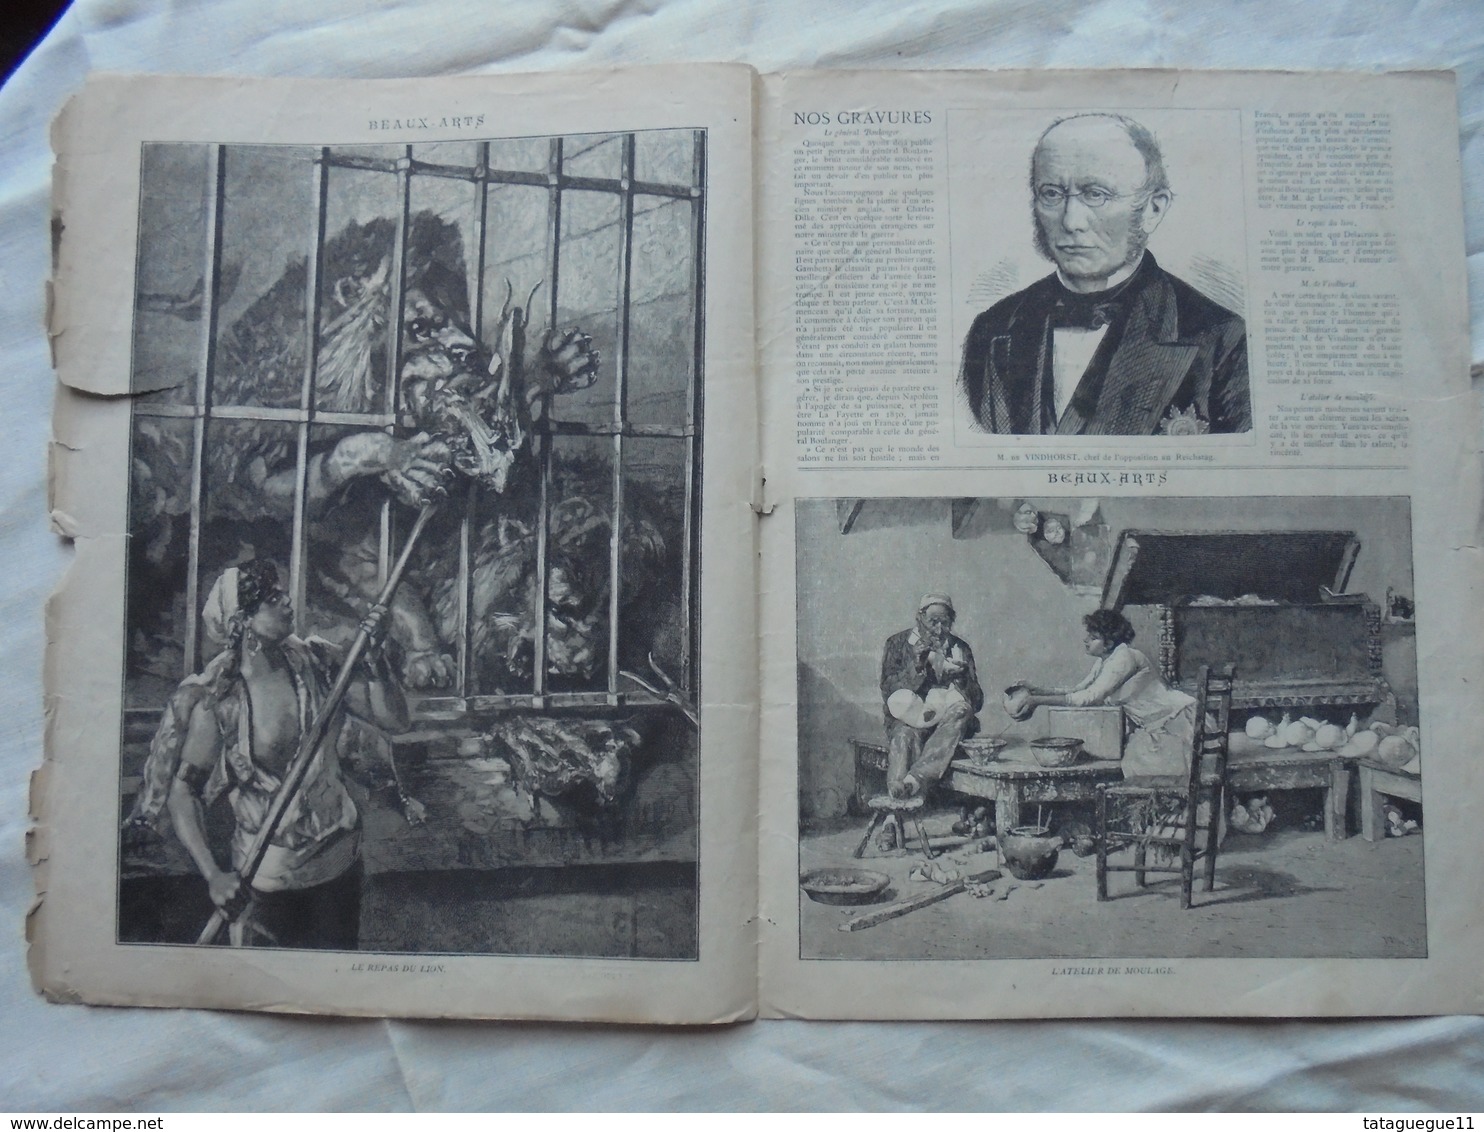 Ancien - Double Page Supplément Illustré Des Anales N° 7 13 Février 1887 - Magazines & Catalogs